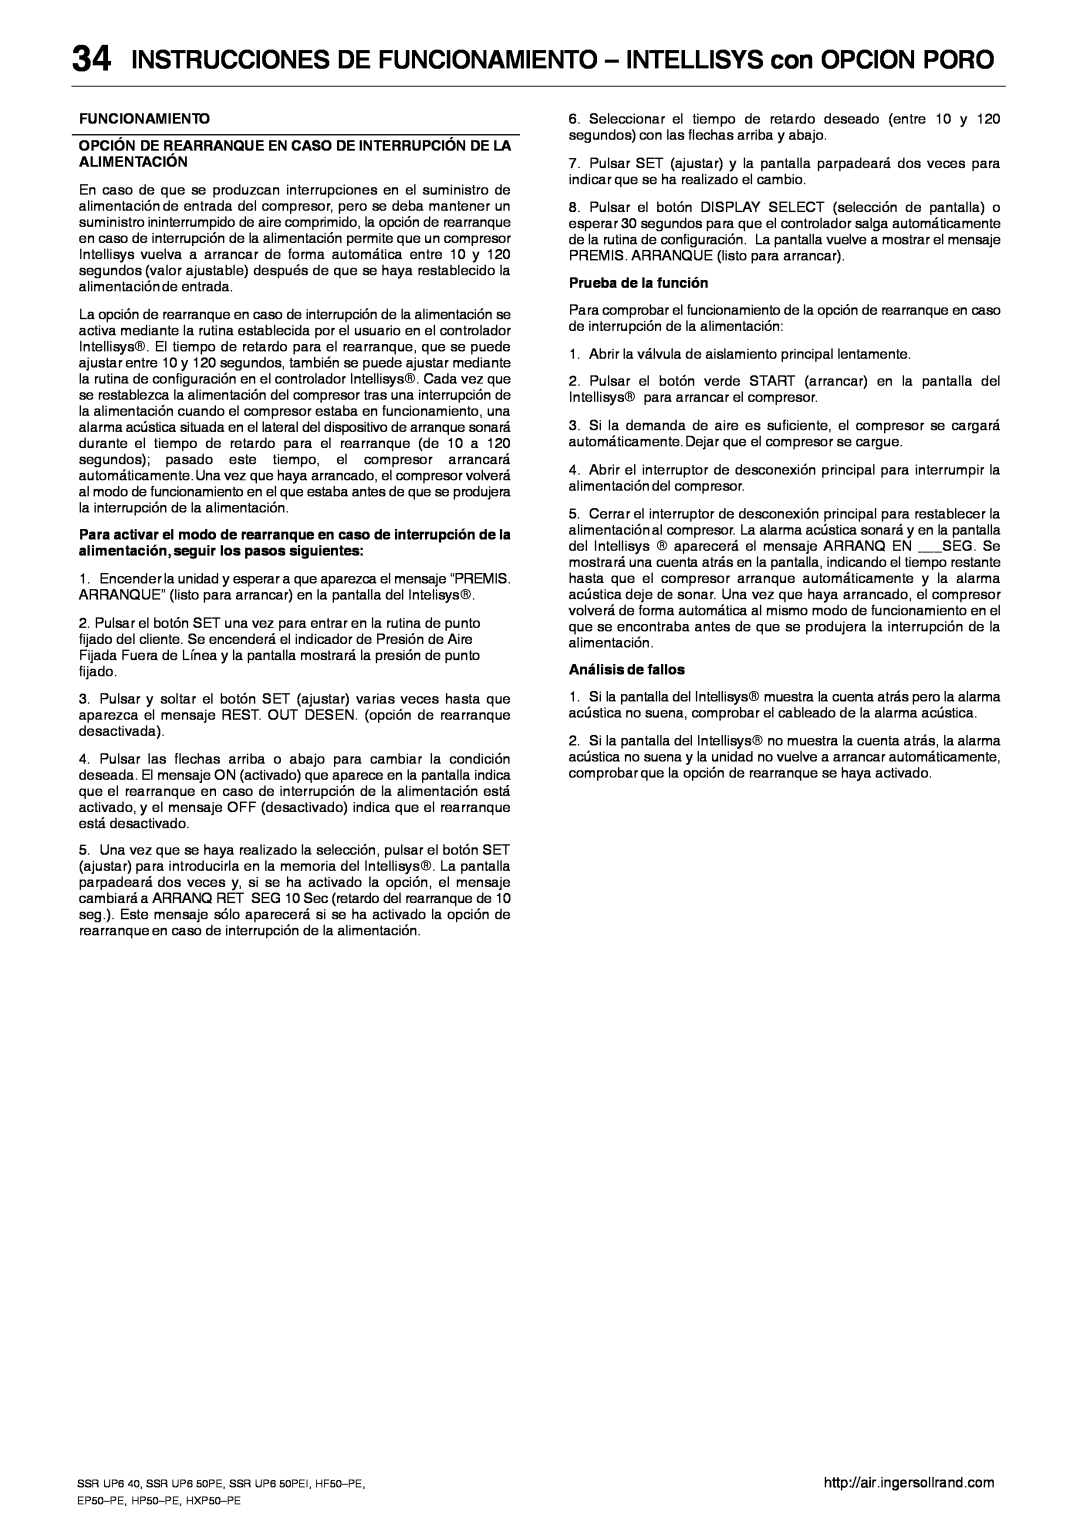 Ingersoll-Rand SSR UP6 50PEI HF50-PE, EP50-PE INSTRUCCIONES DE FUNCIONAMIENTO - INTELLISYS con OPCION PORO, Funcionamiento 